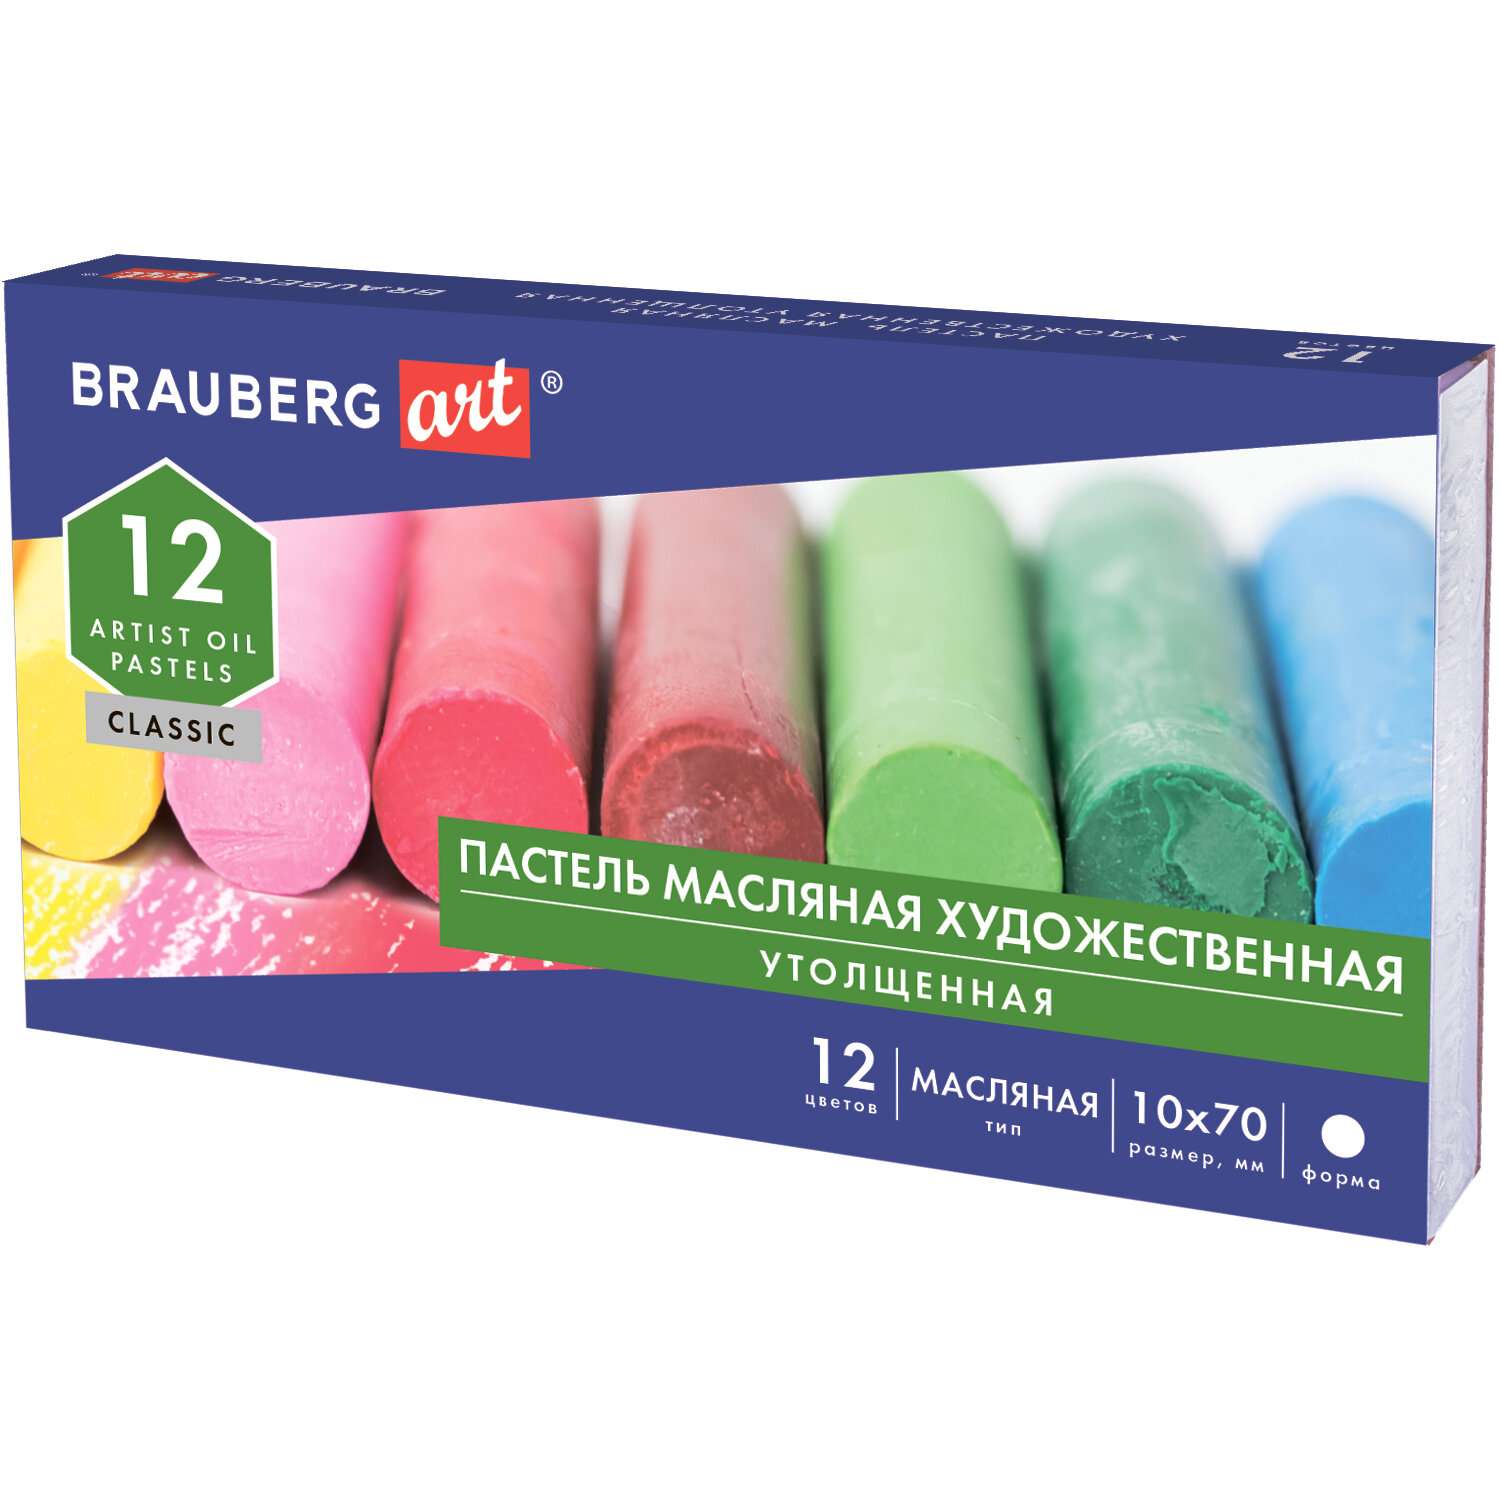 Пастель масляная Brauberg художественная для рисования 12 цветов - фото 1